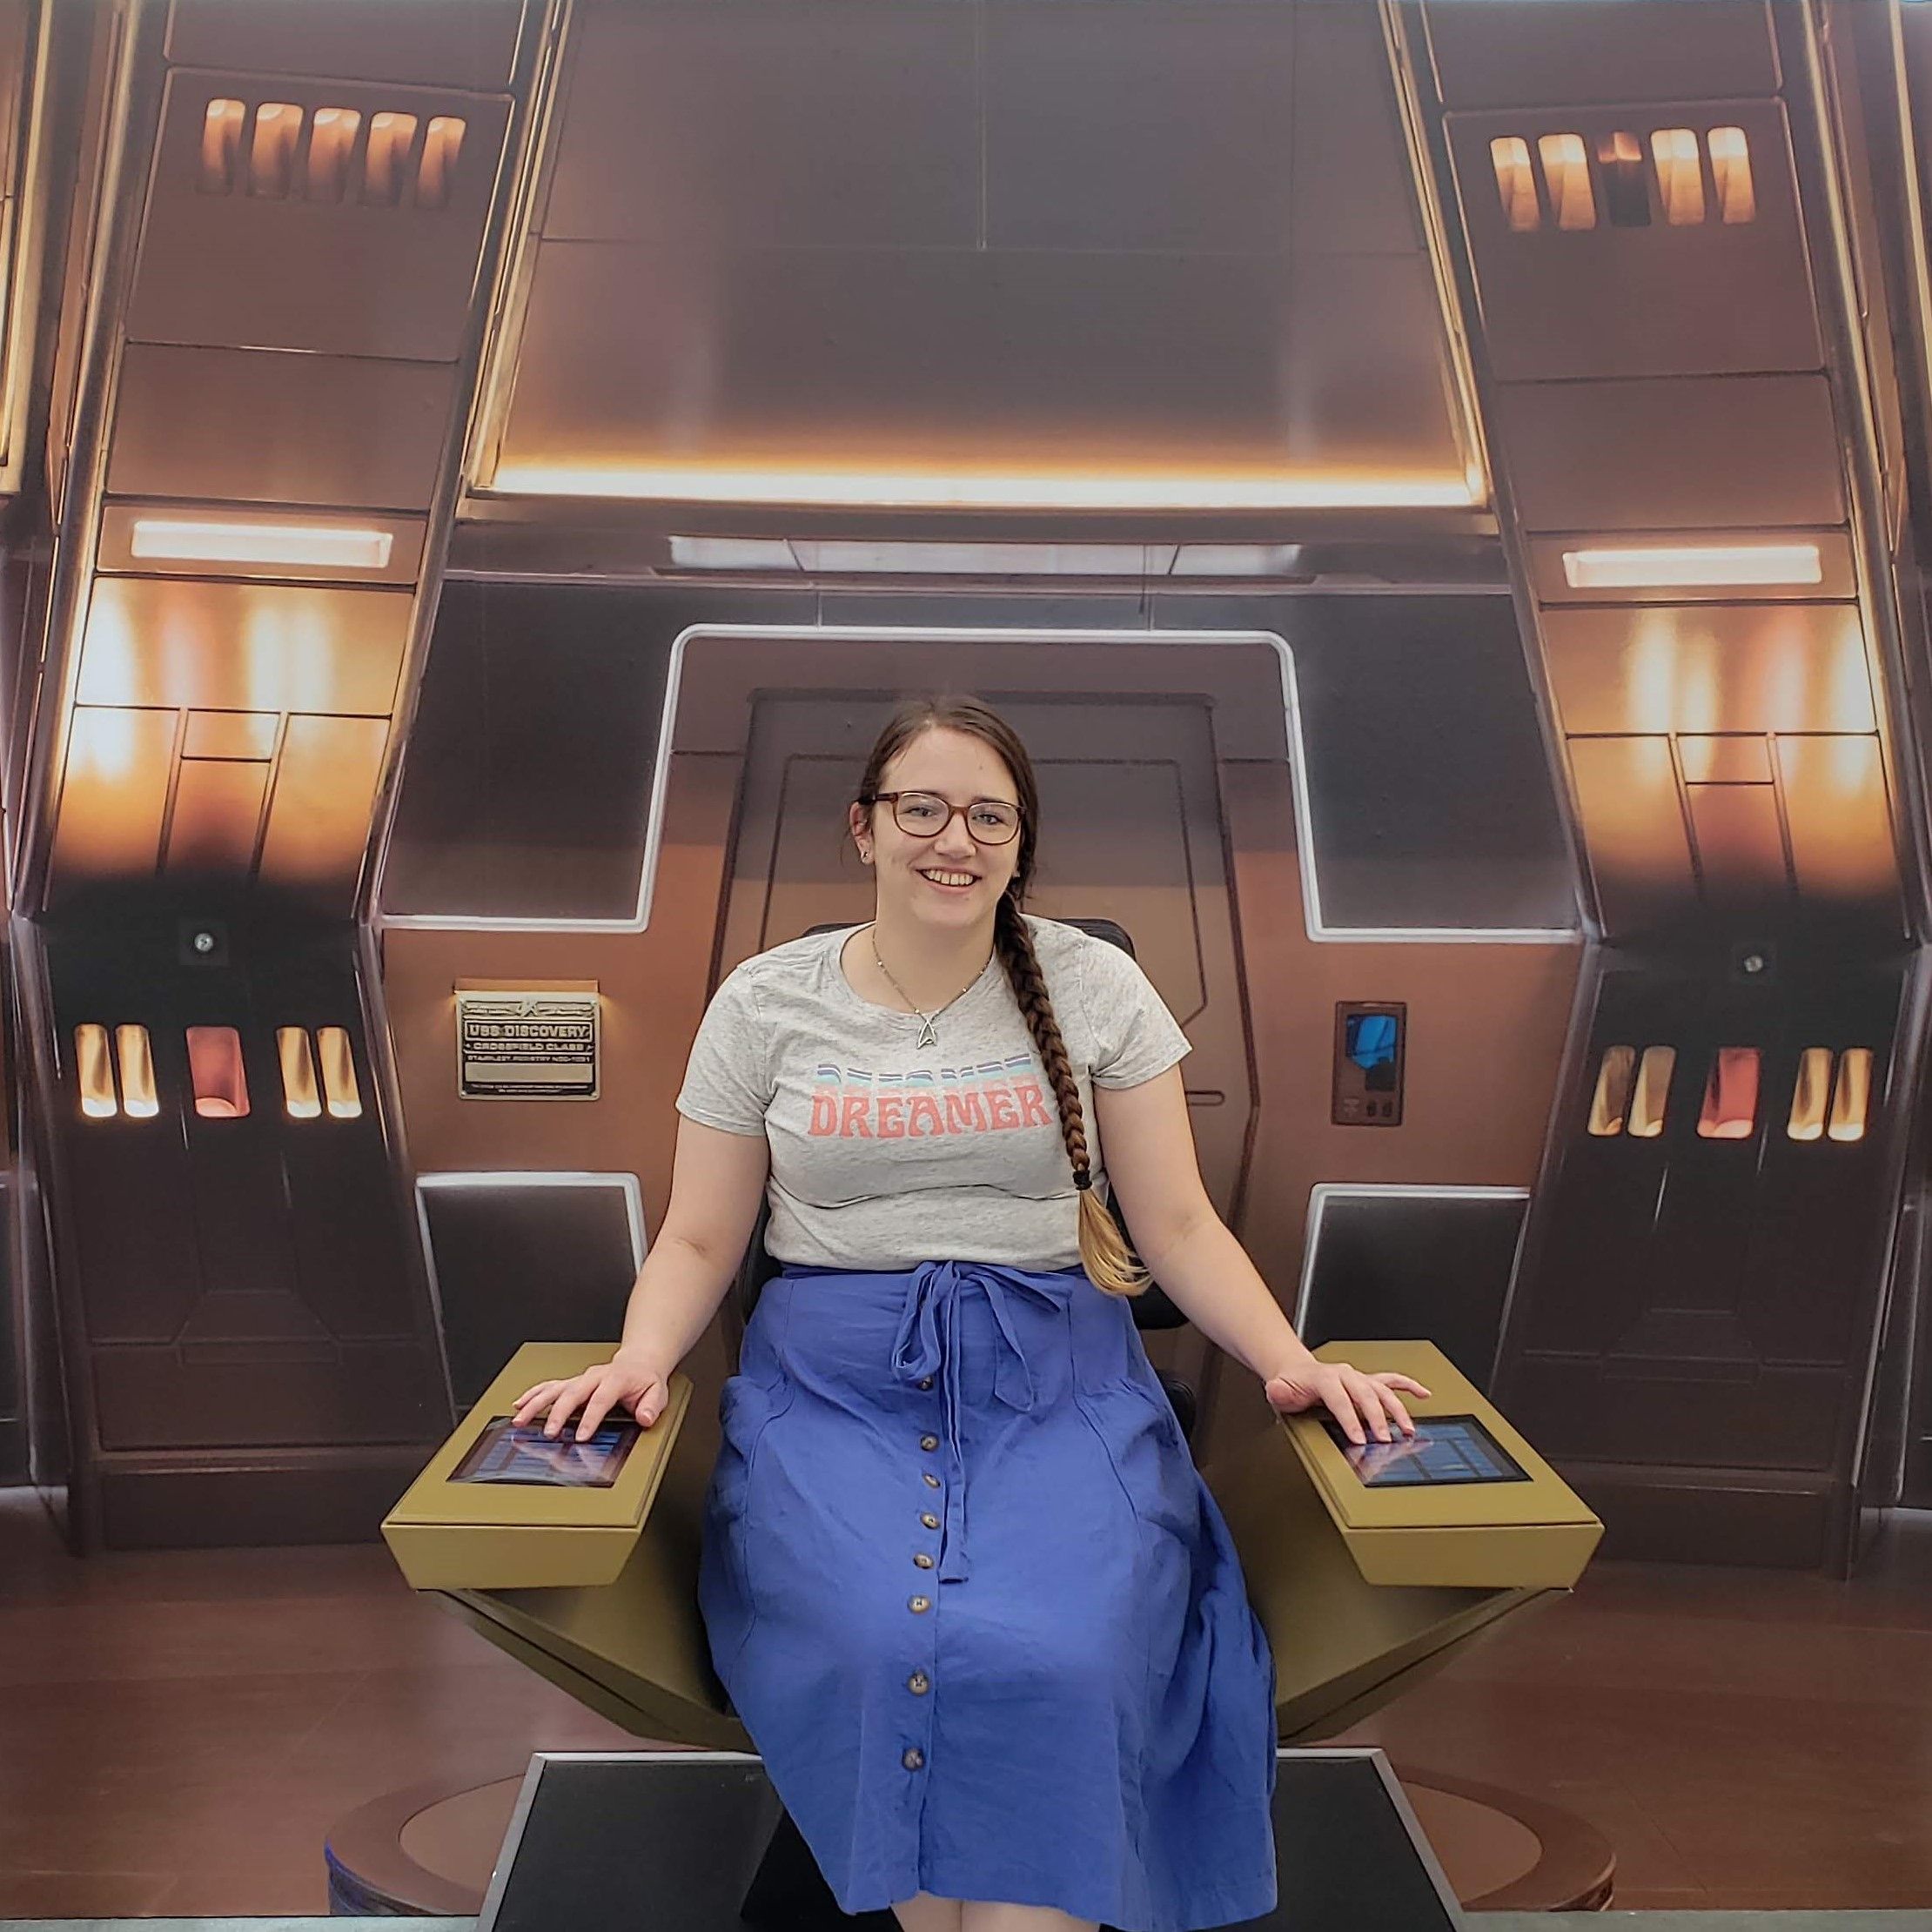 Rachel Hulshult-Star Trek Features Writer